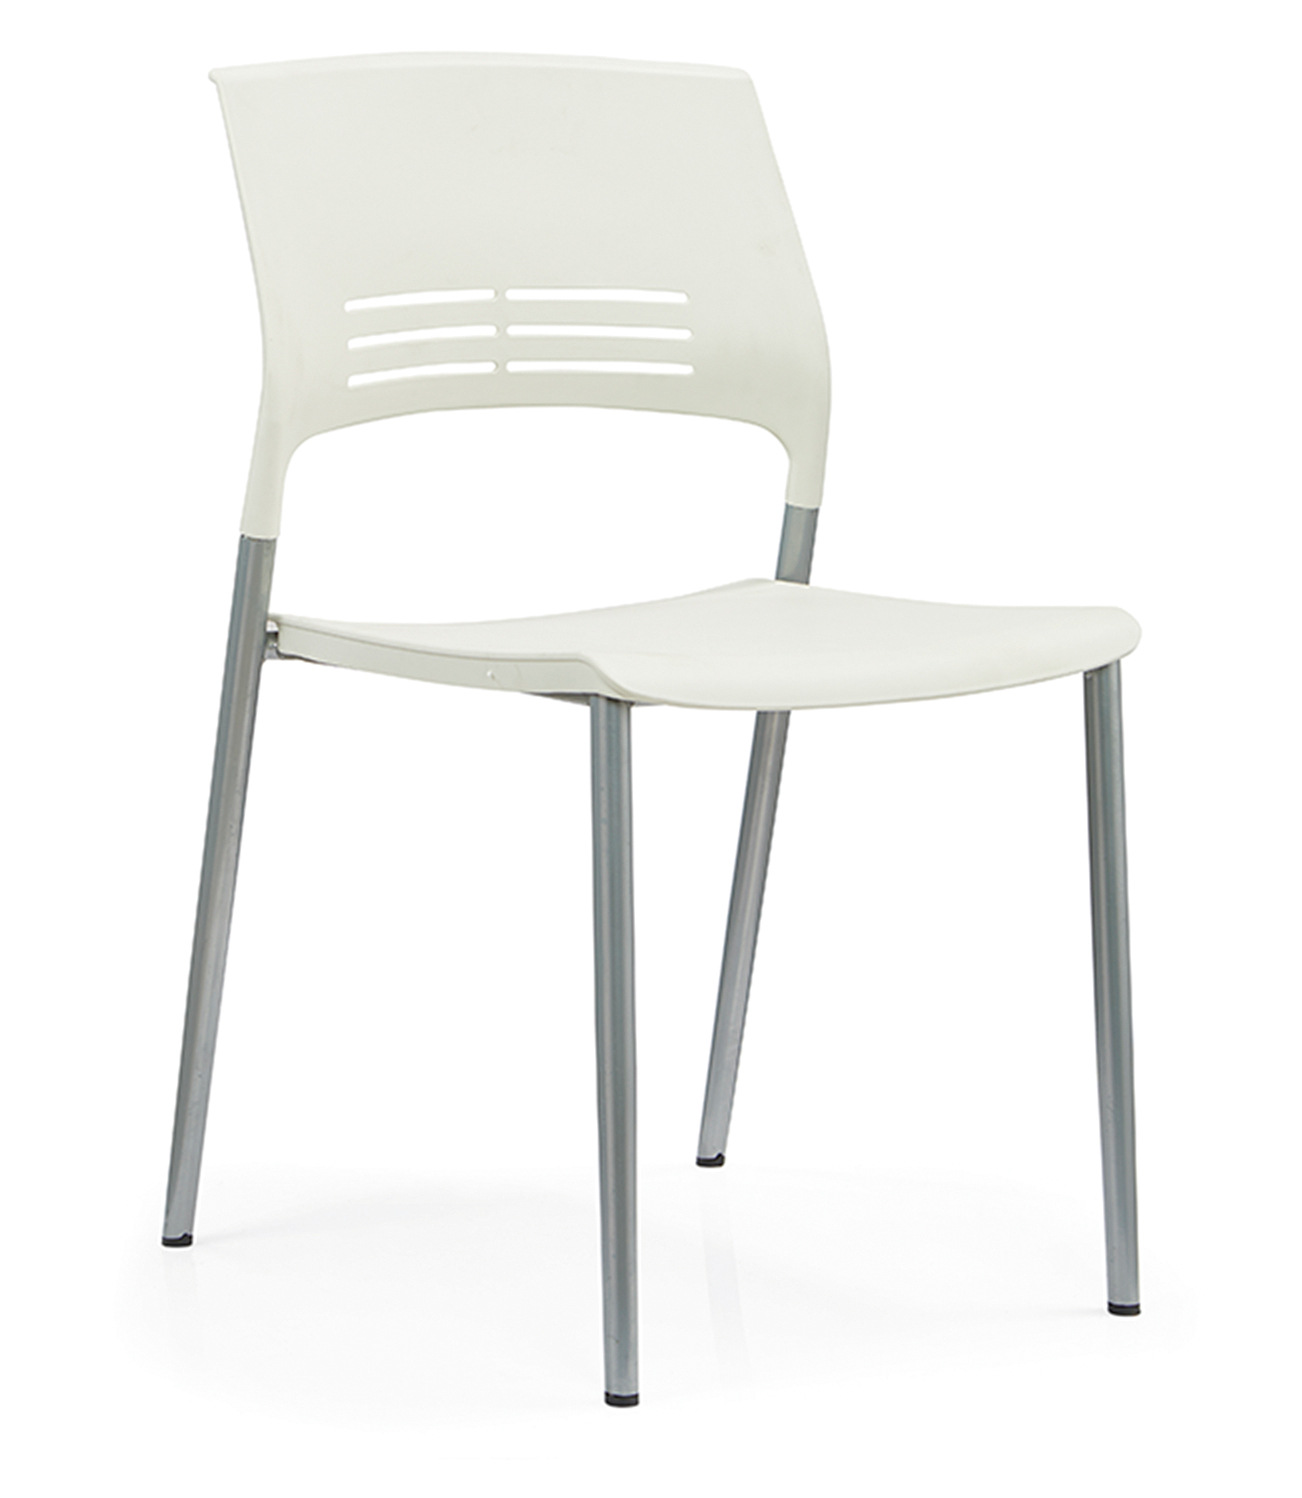 厂家小型培训椅会议餐厅塑料椅洽谈接待椅可叠落四脚椅子多色可选